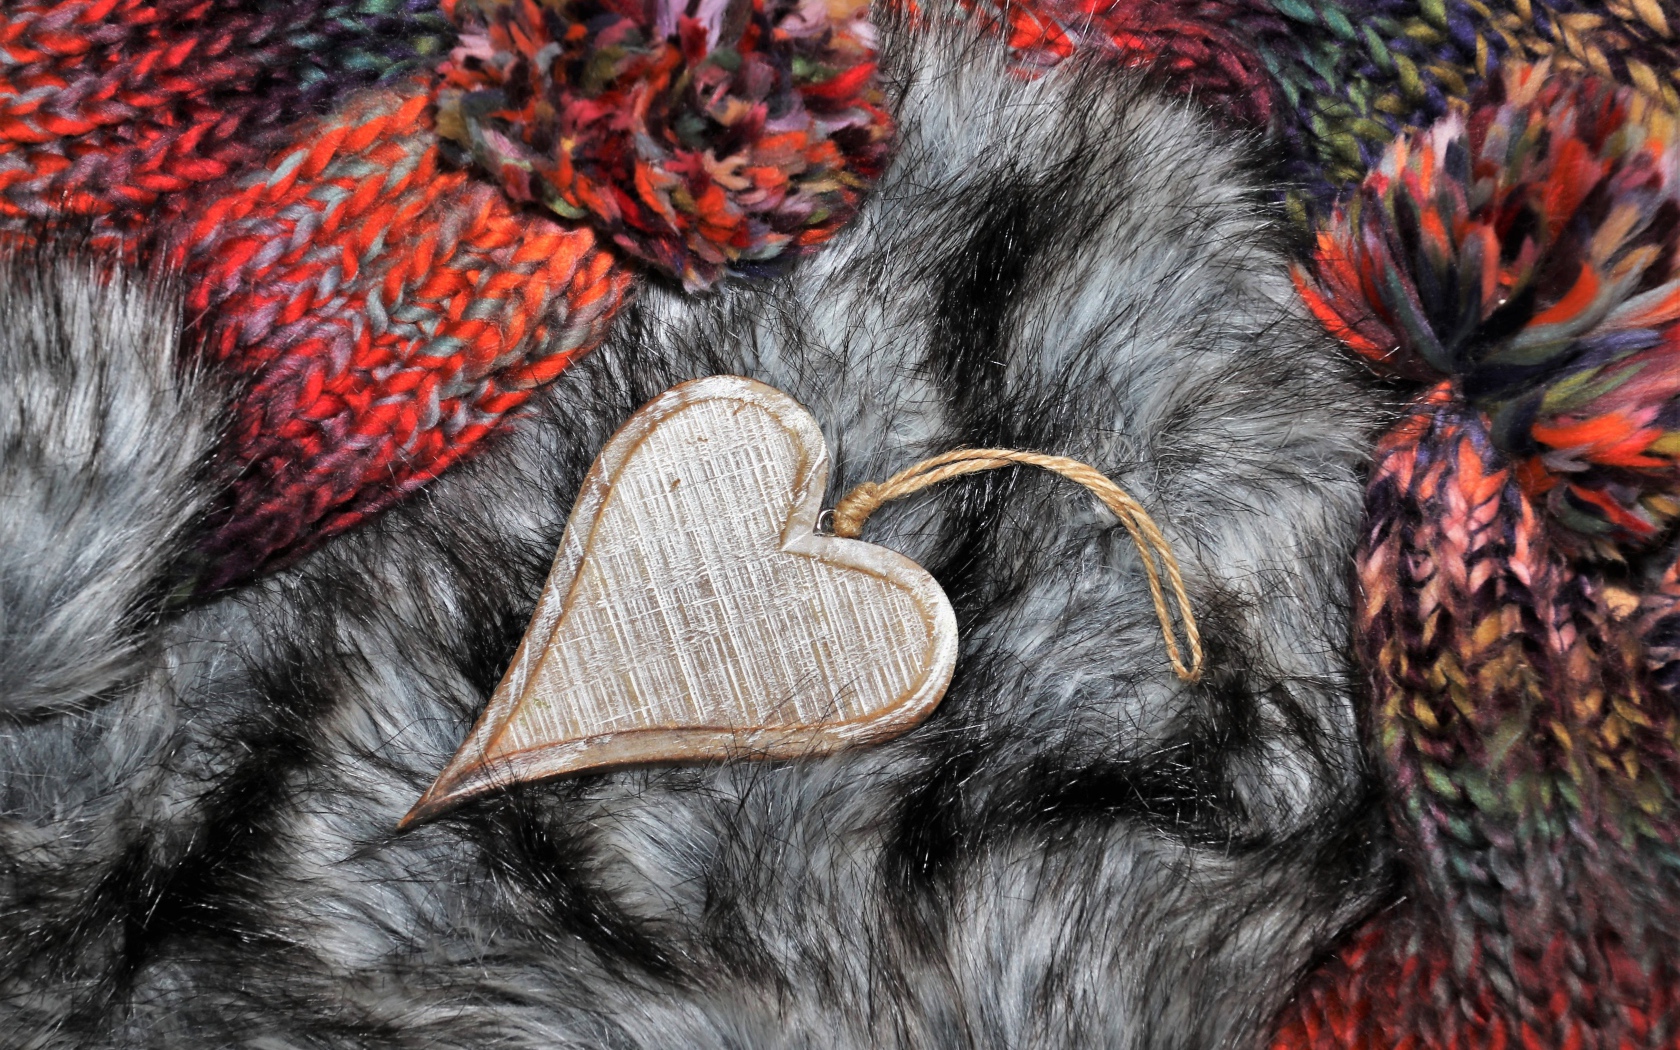 Wooden heart lies on a fur hat